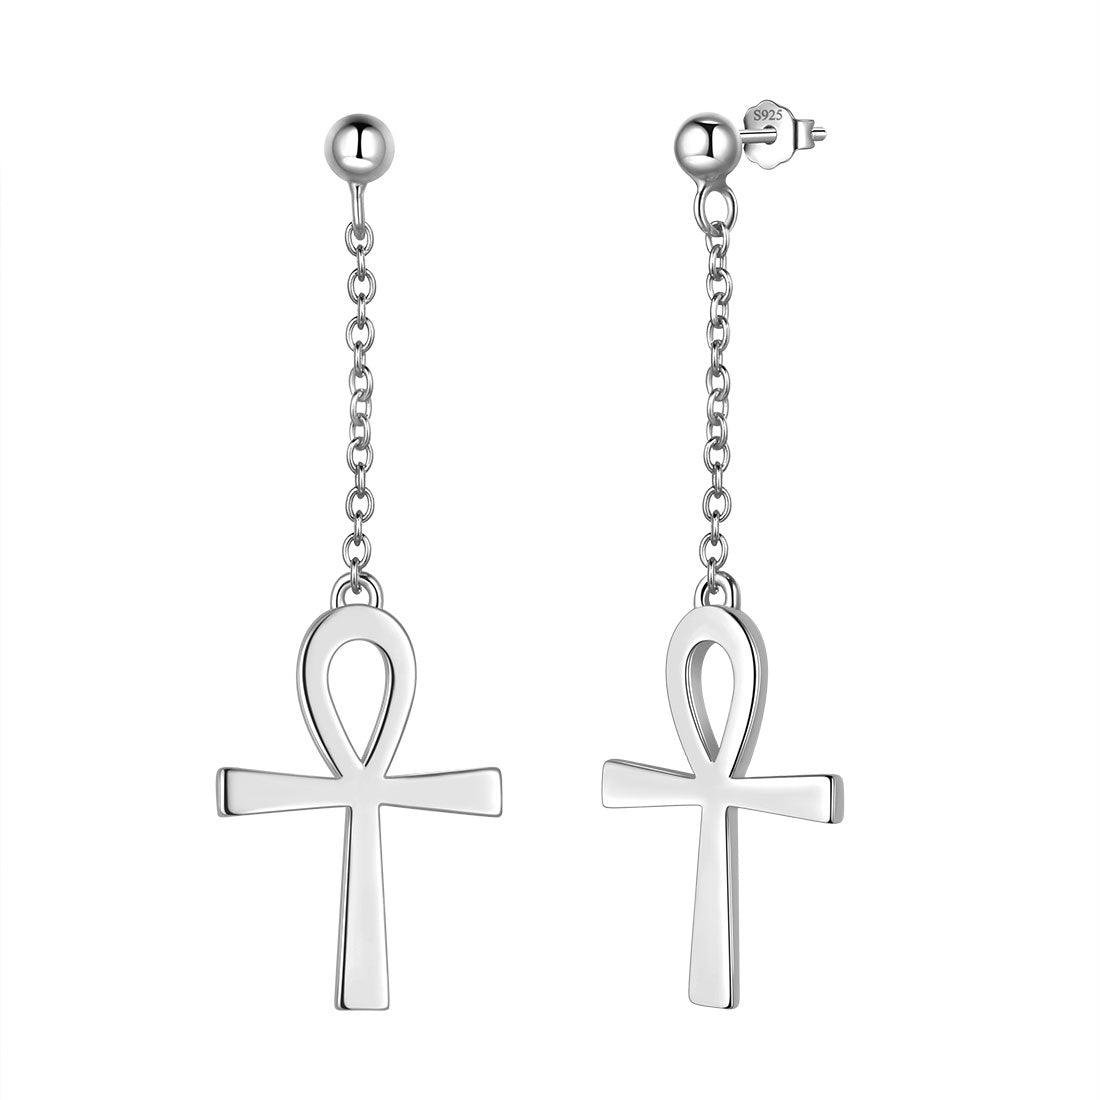 Ankh Cross Dangle Earrings Sterling Silver - Earrings - Aurora Tears Jewelry